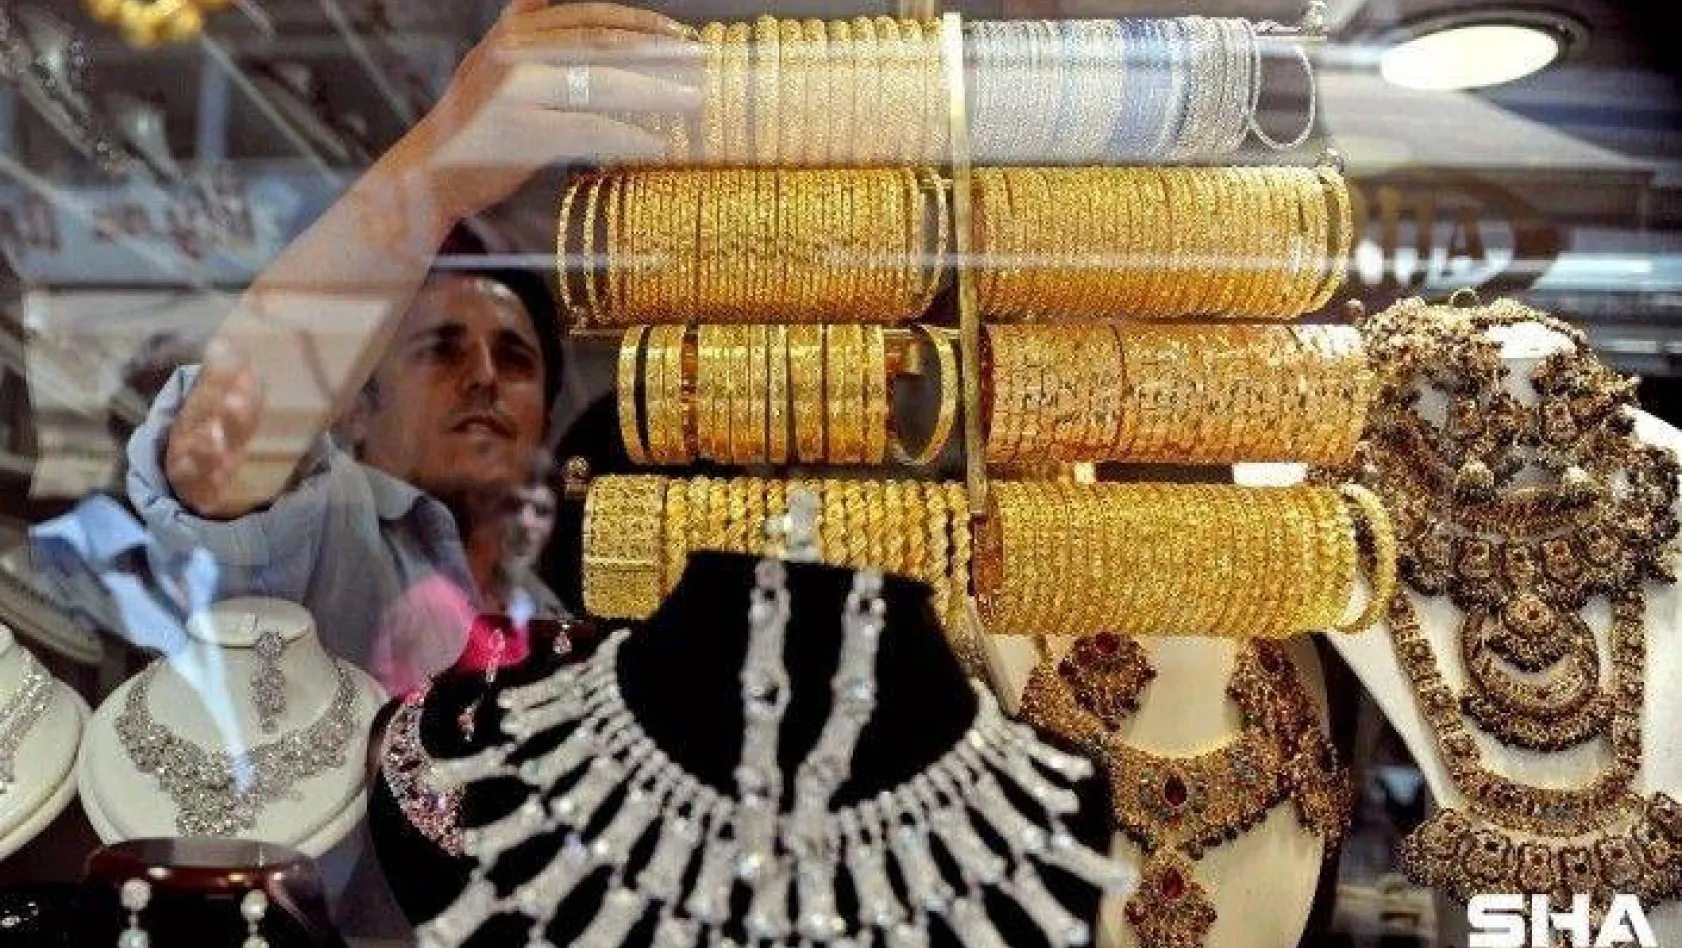 24 ayar külçe altının gram satış fiyatı 474,70 lira oldu